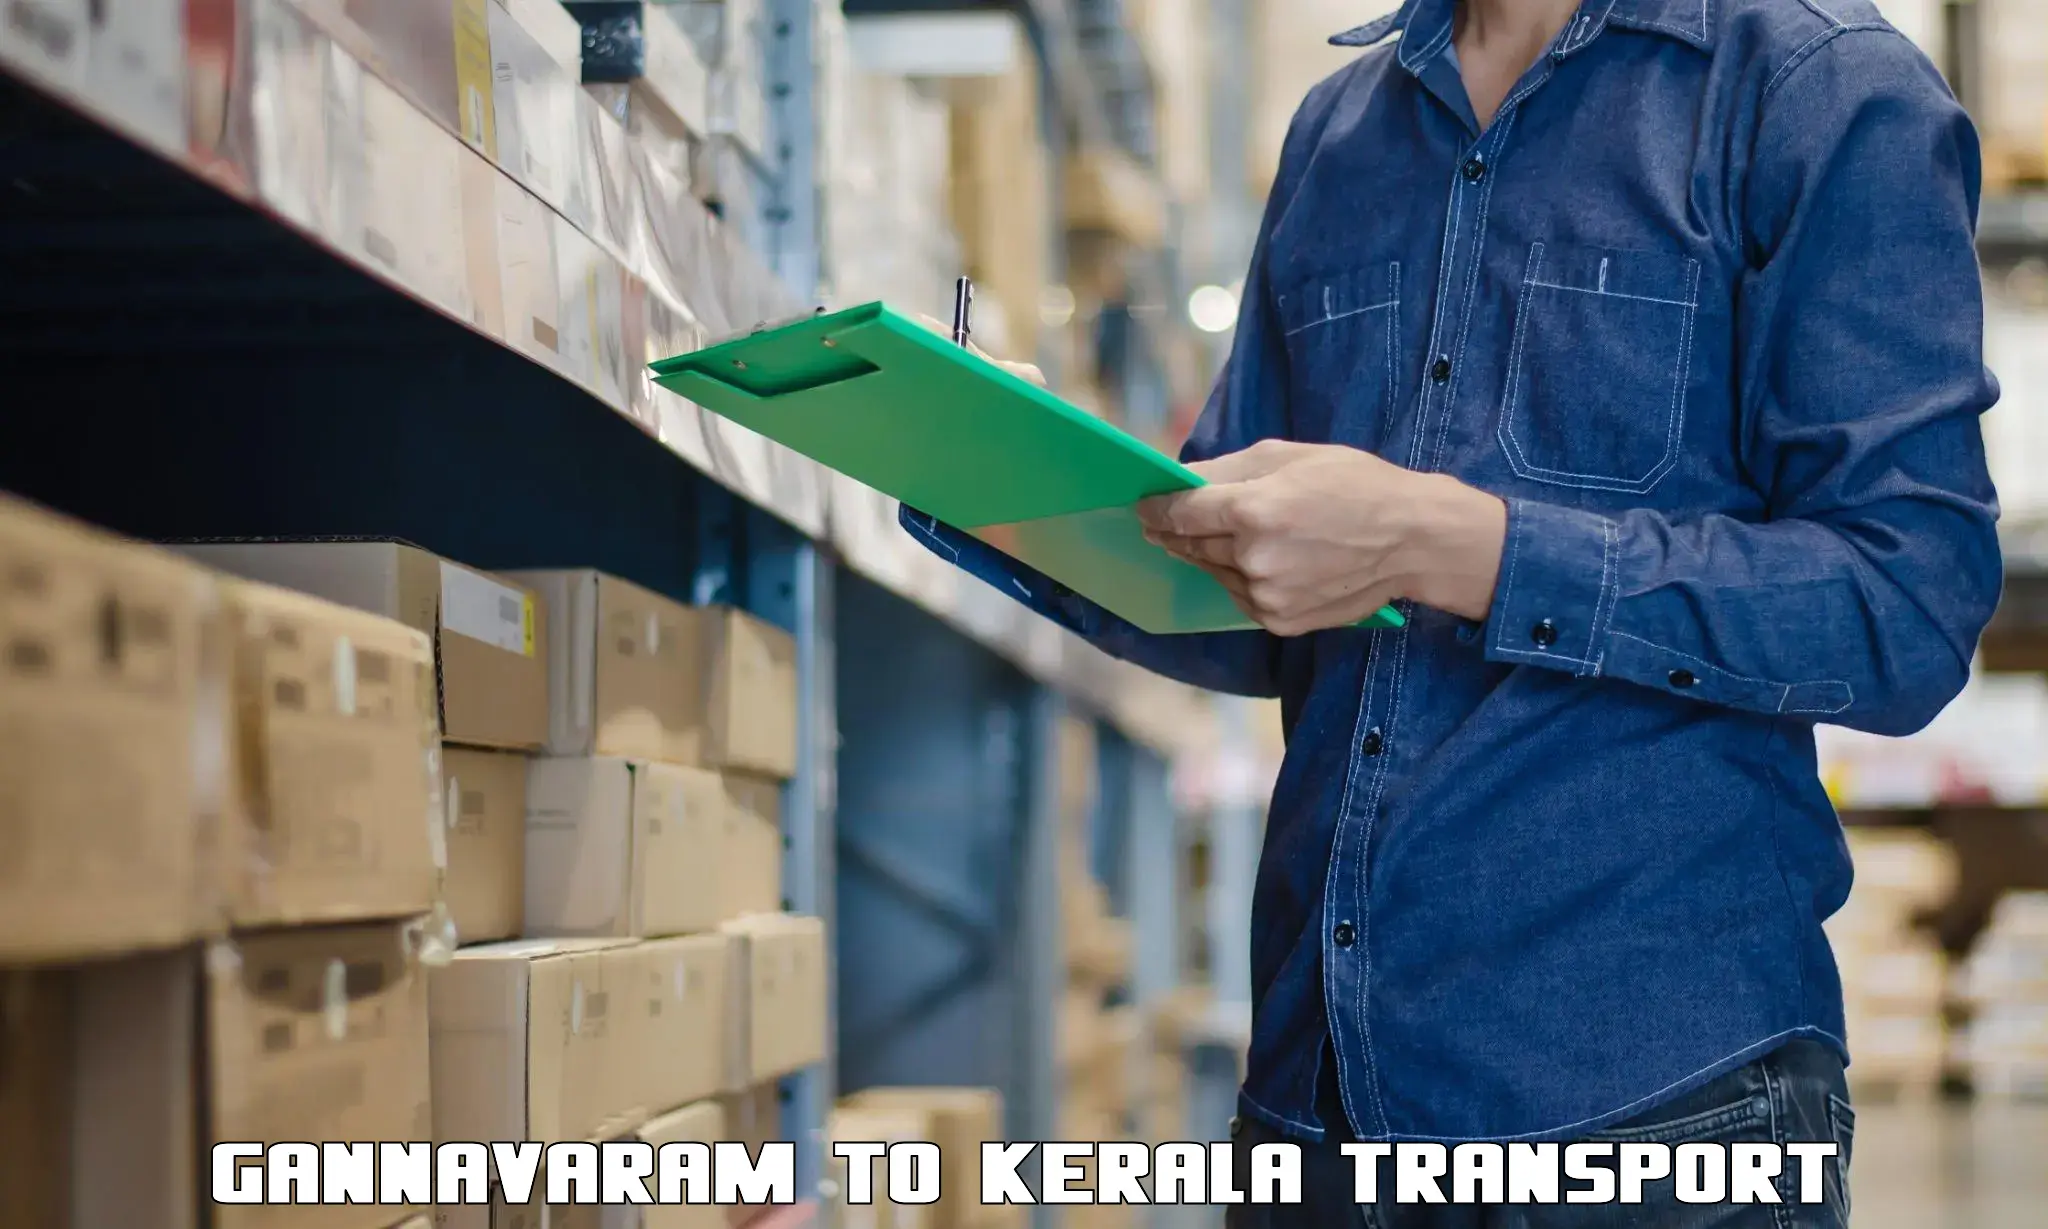 Package delivery services Gannavaram to Kalpetta